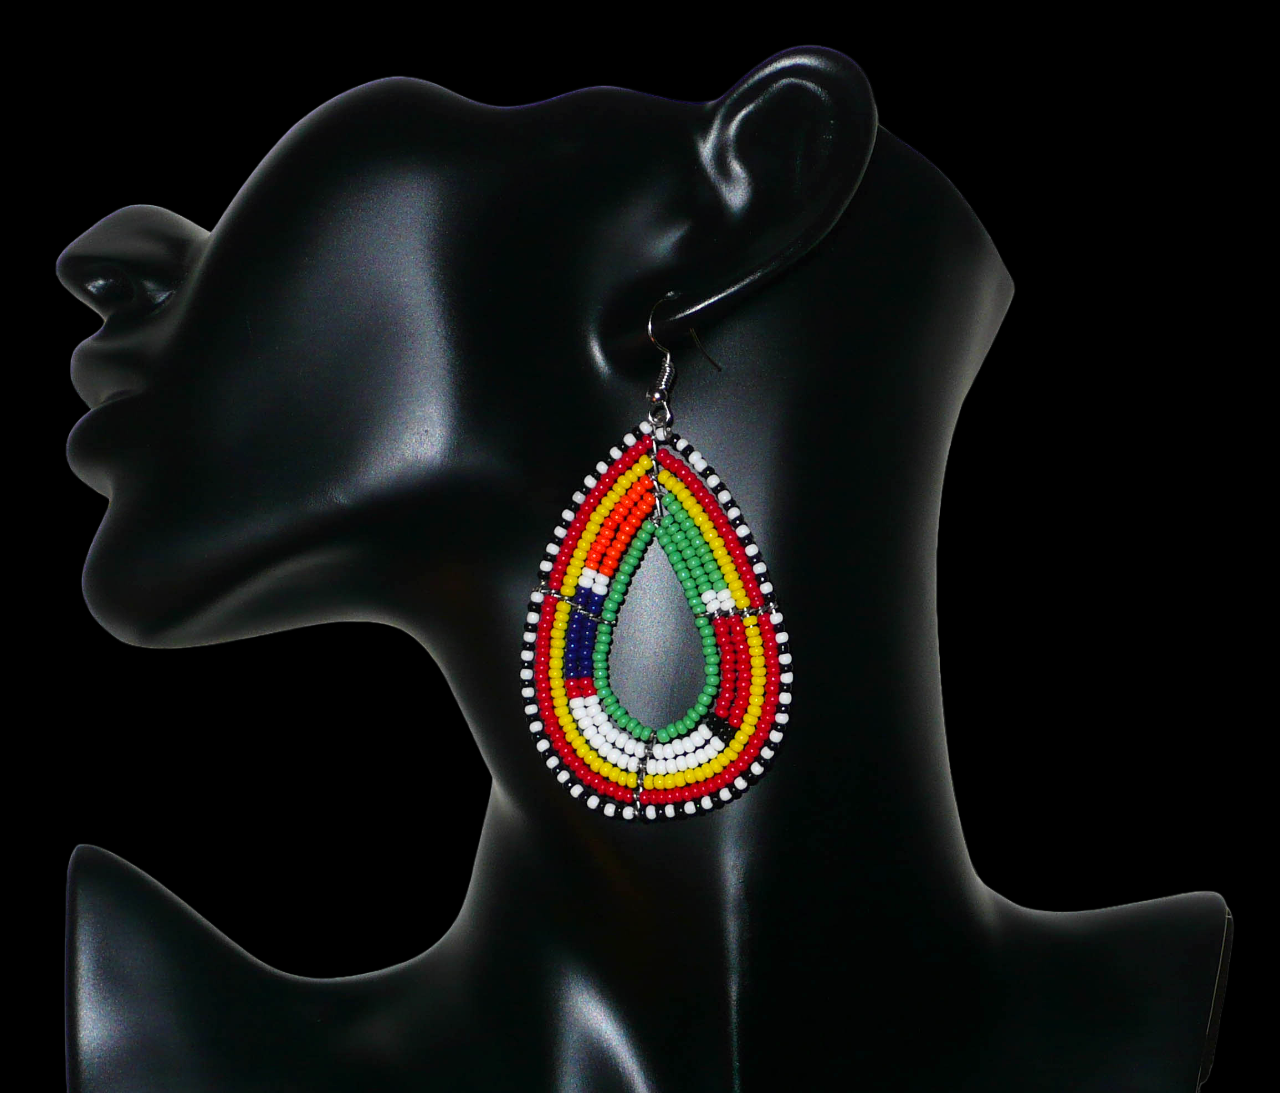 Boucles d'oreilles africaines à motifs ethniques Massai composées de perles de rocaille vertes et multicolores enfilées sur des fils de fer montés en forme de gouttes. Elles mesurent 8 cm de long et 4 cm de large et se portent avec des crochets en acier inoxydable sur des oreilles percées. Timeless Fineries